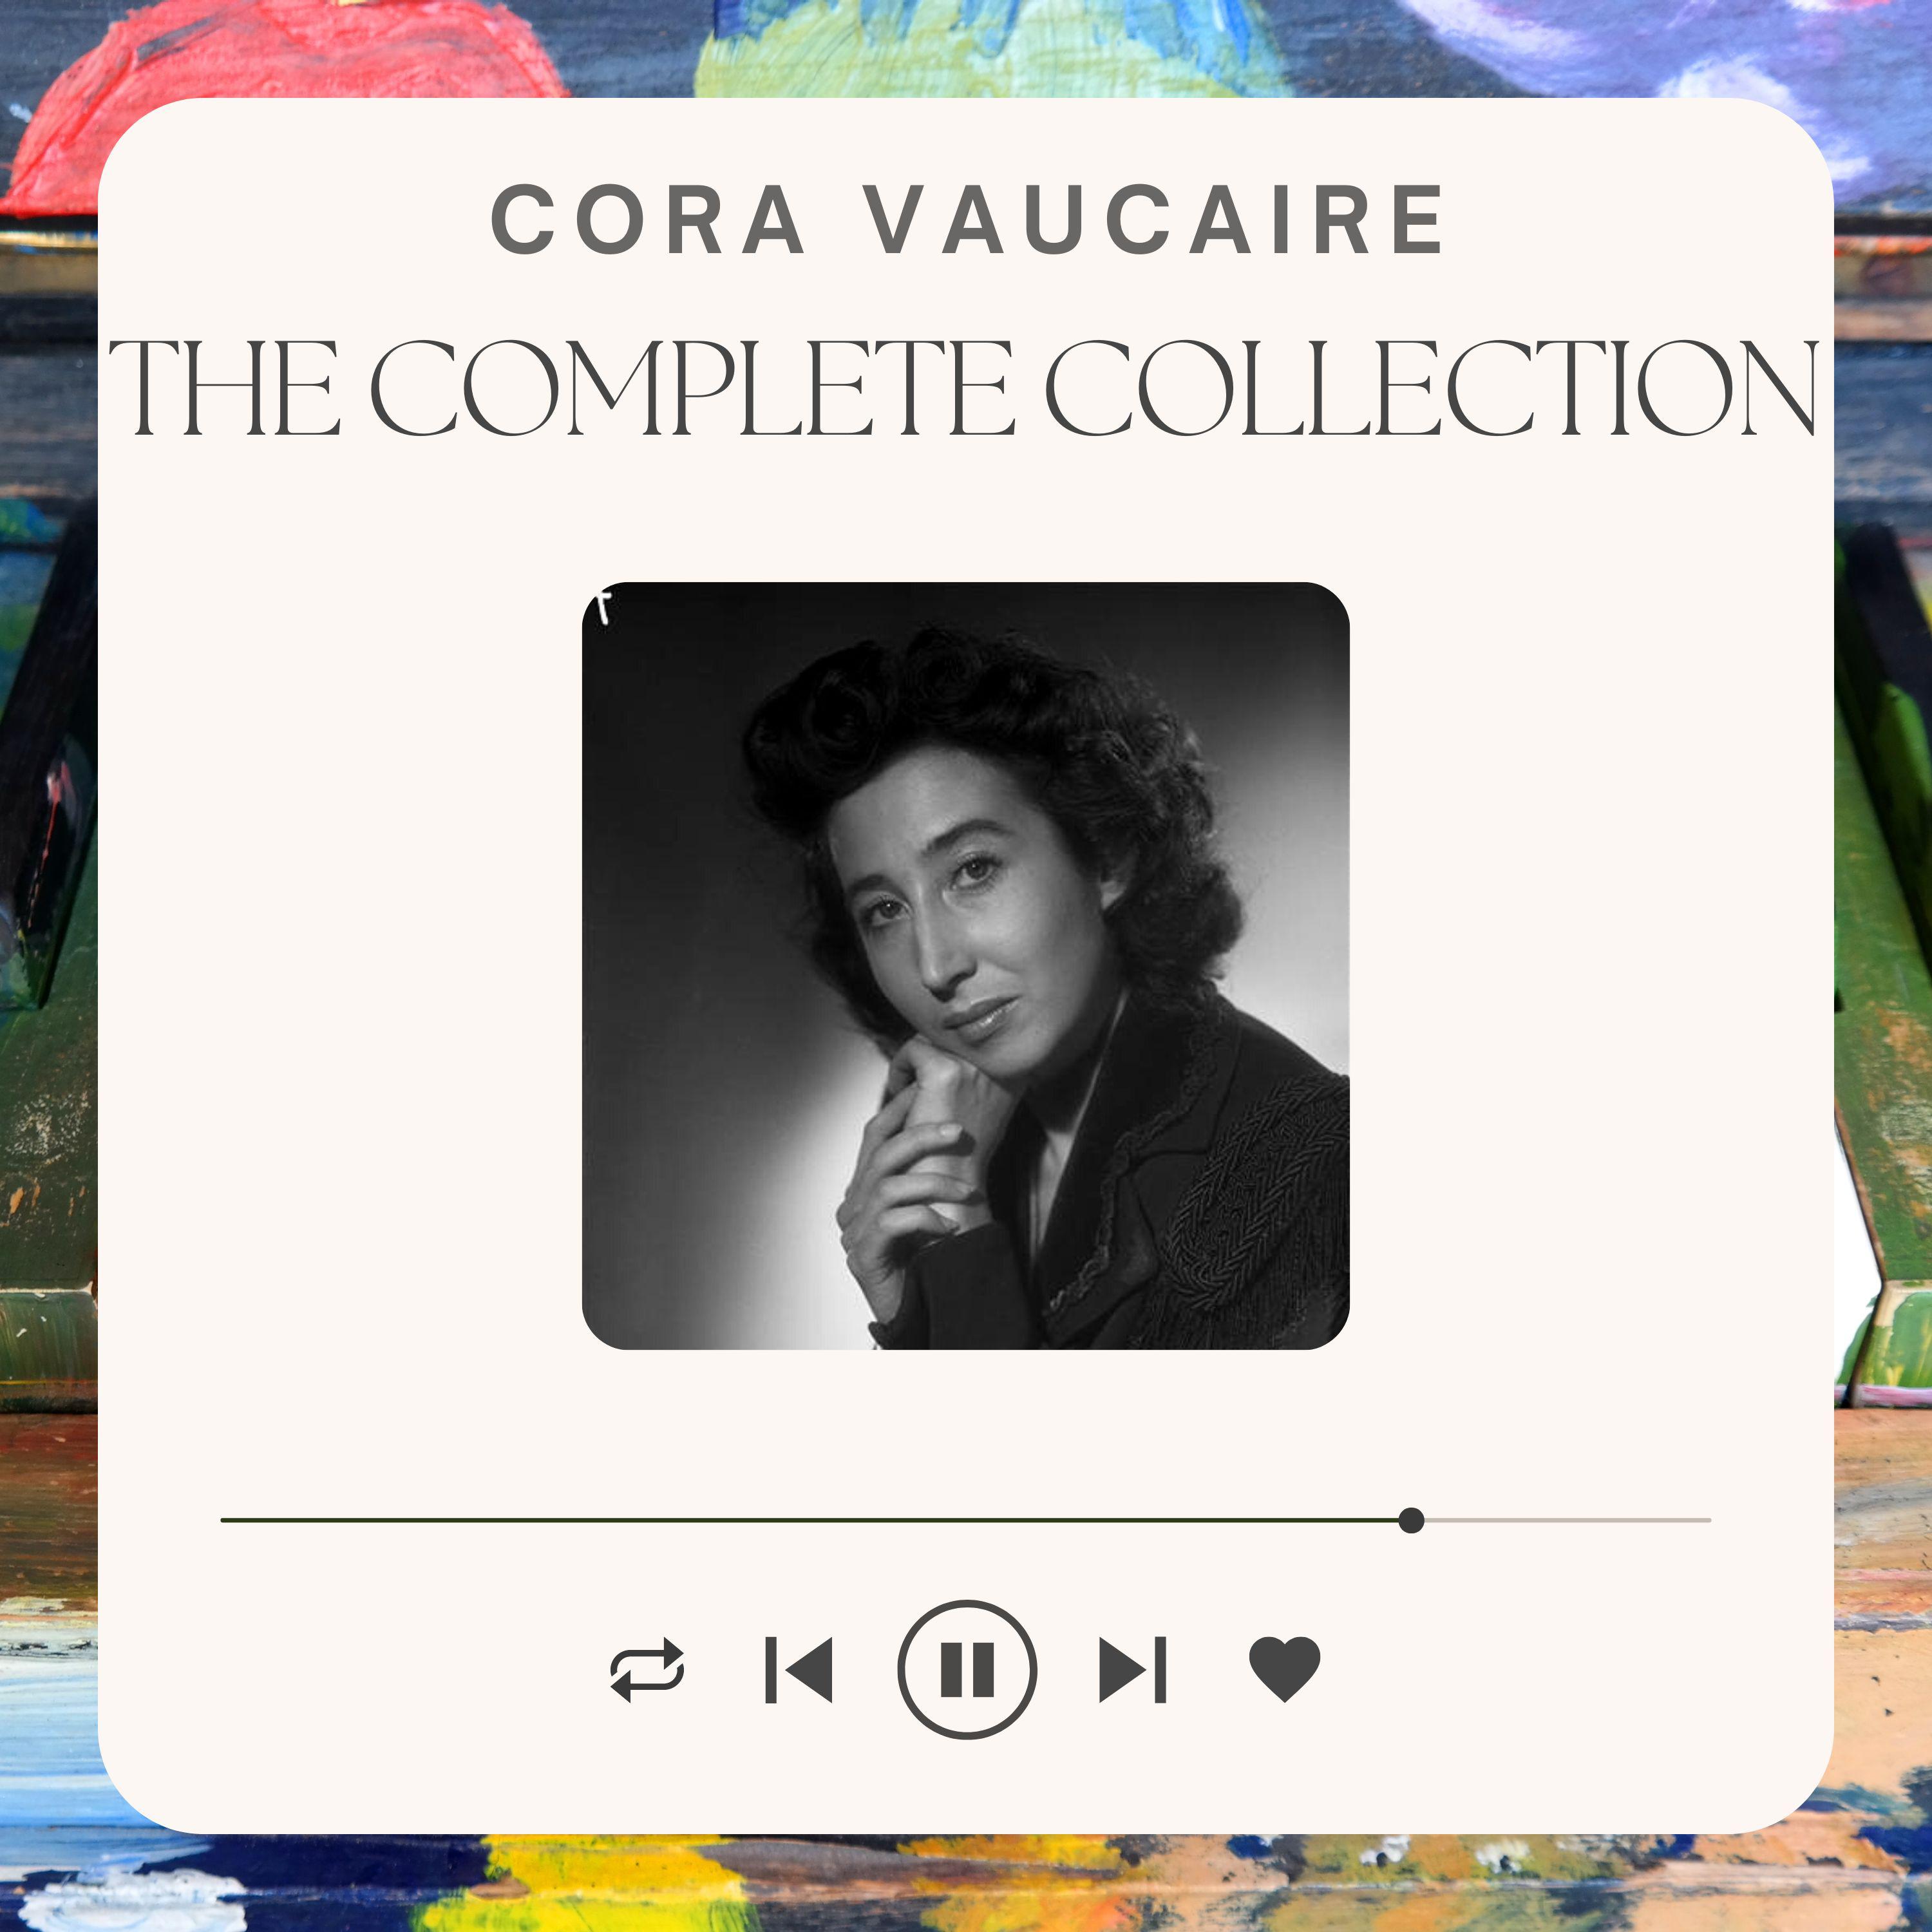 Cora Vaucaire - Trois petites notes de musique